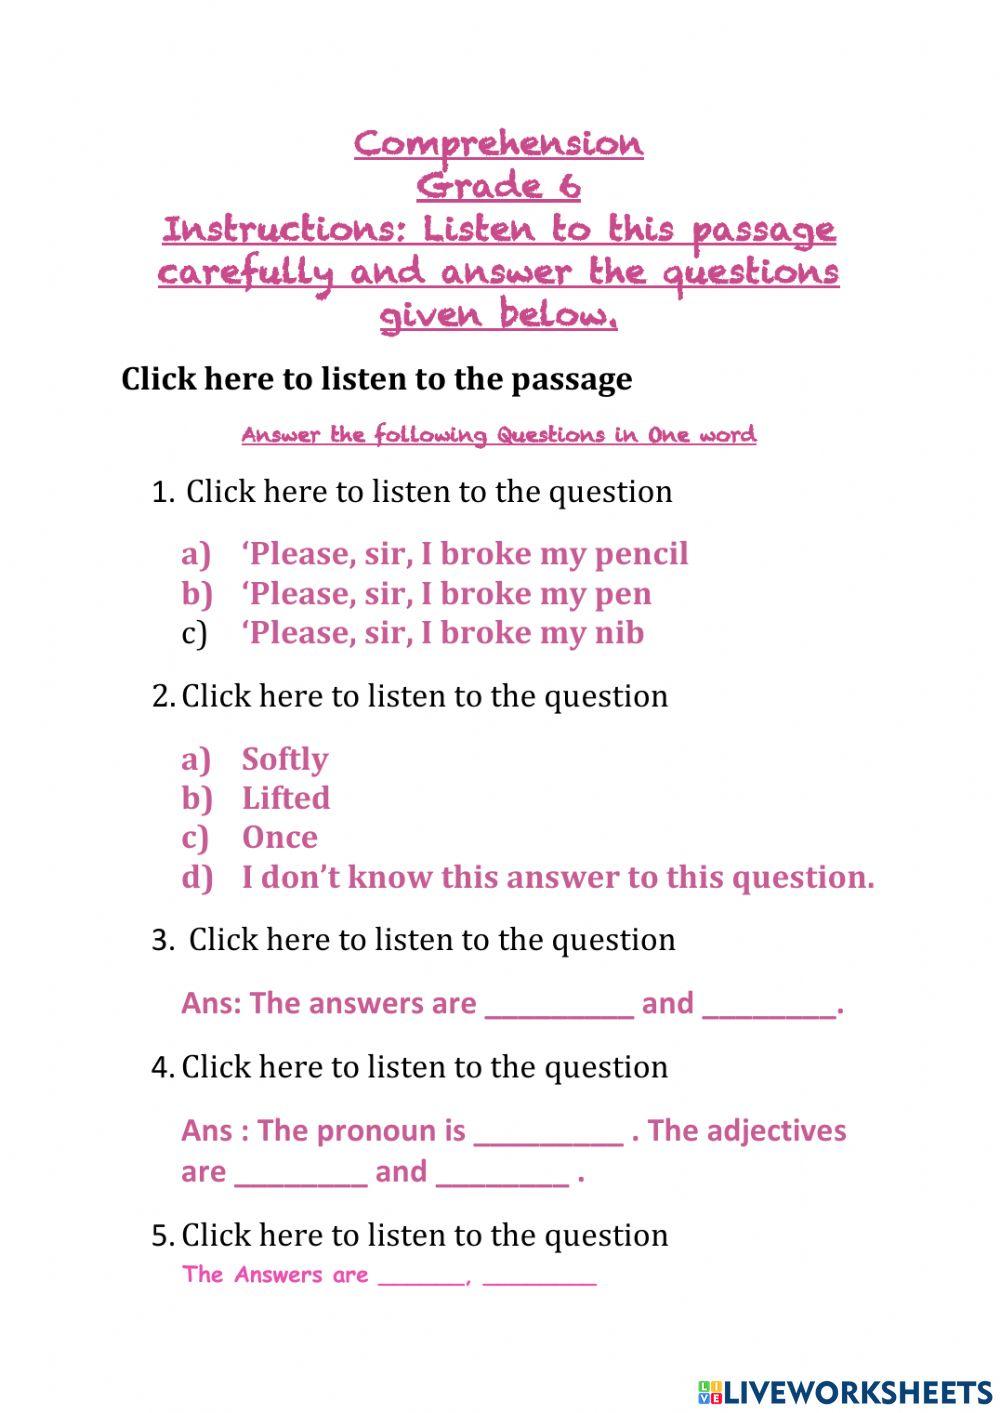 Comprehension worksheet for grade 6